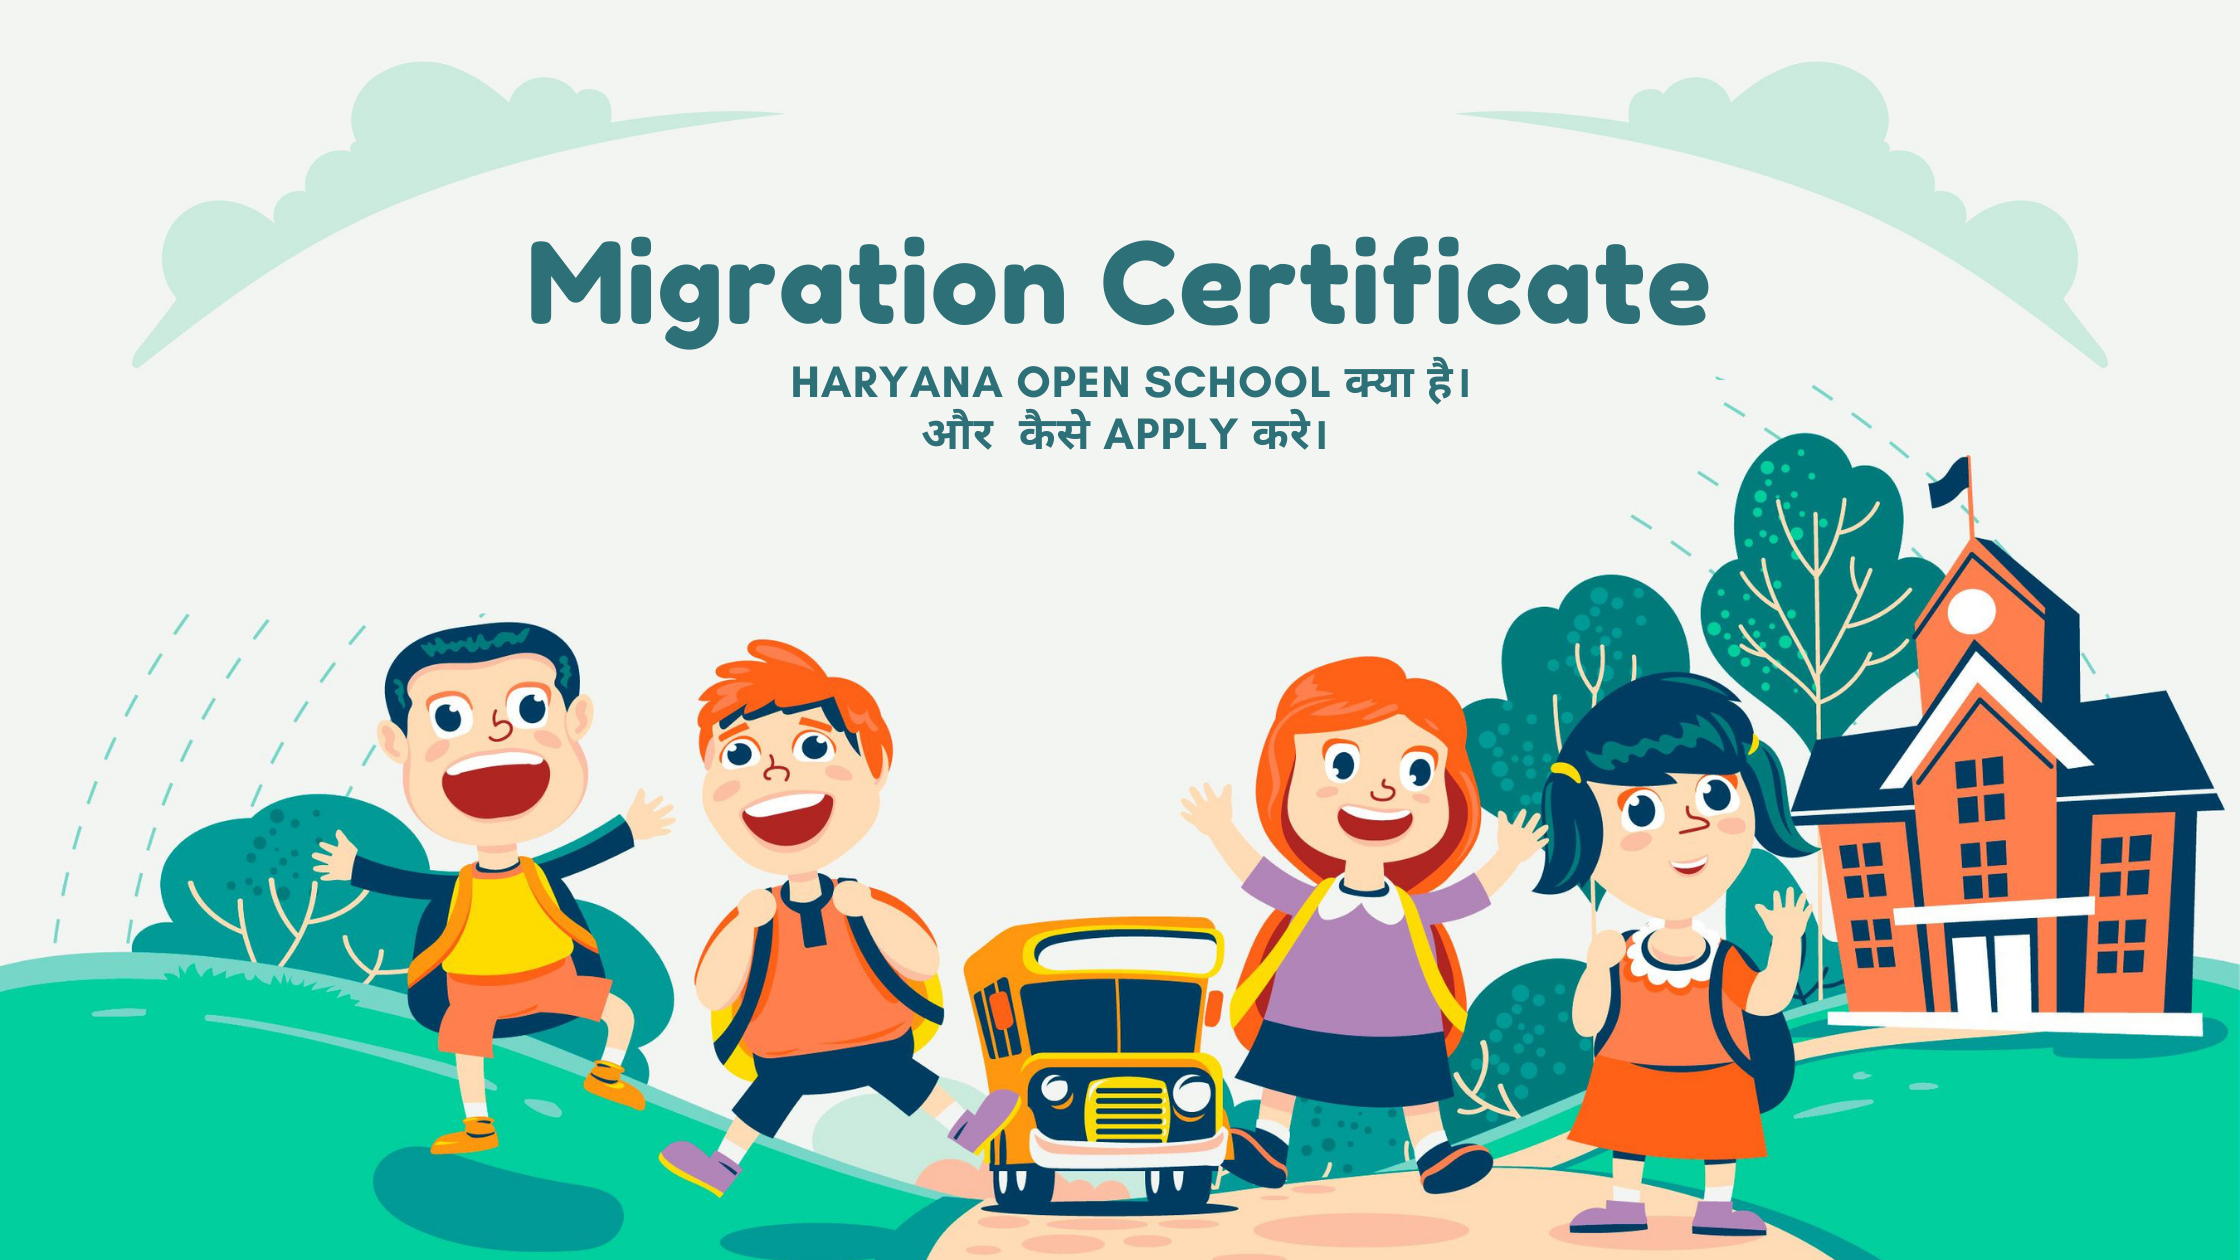 Migration Certificate Haryana Open School